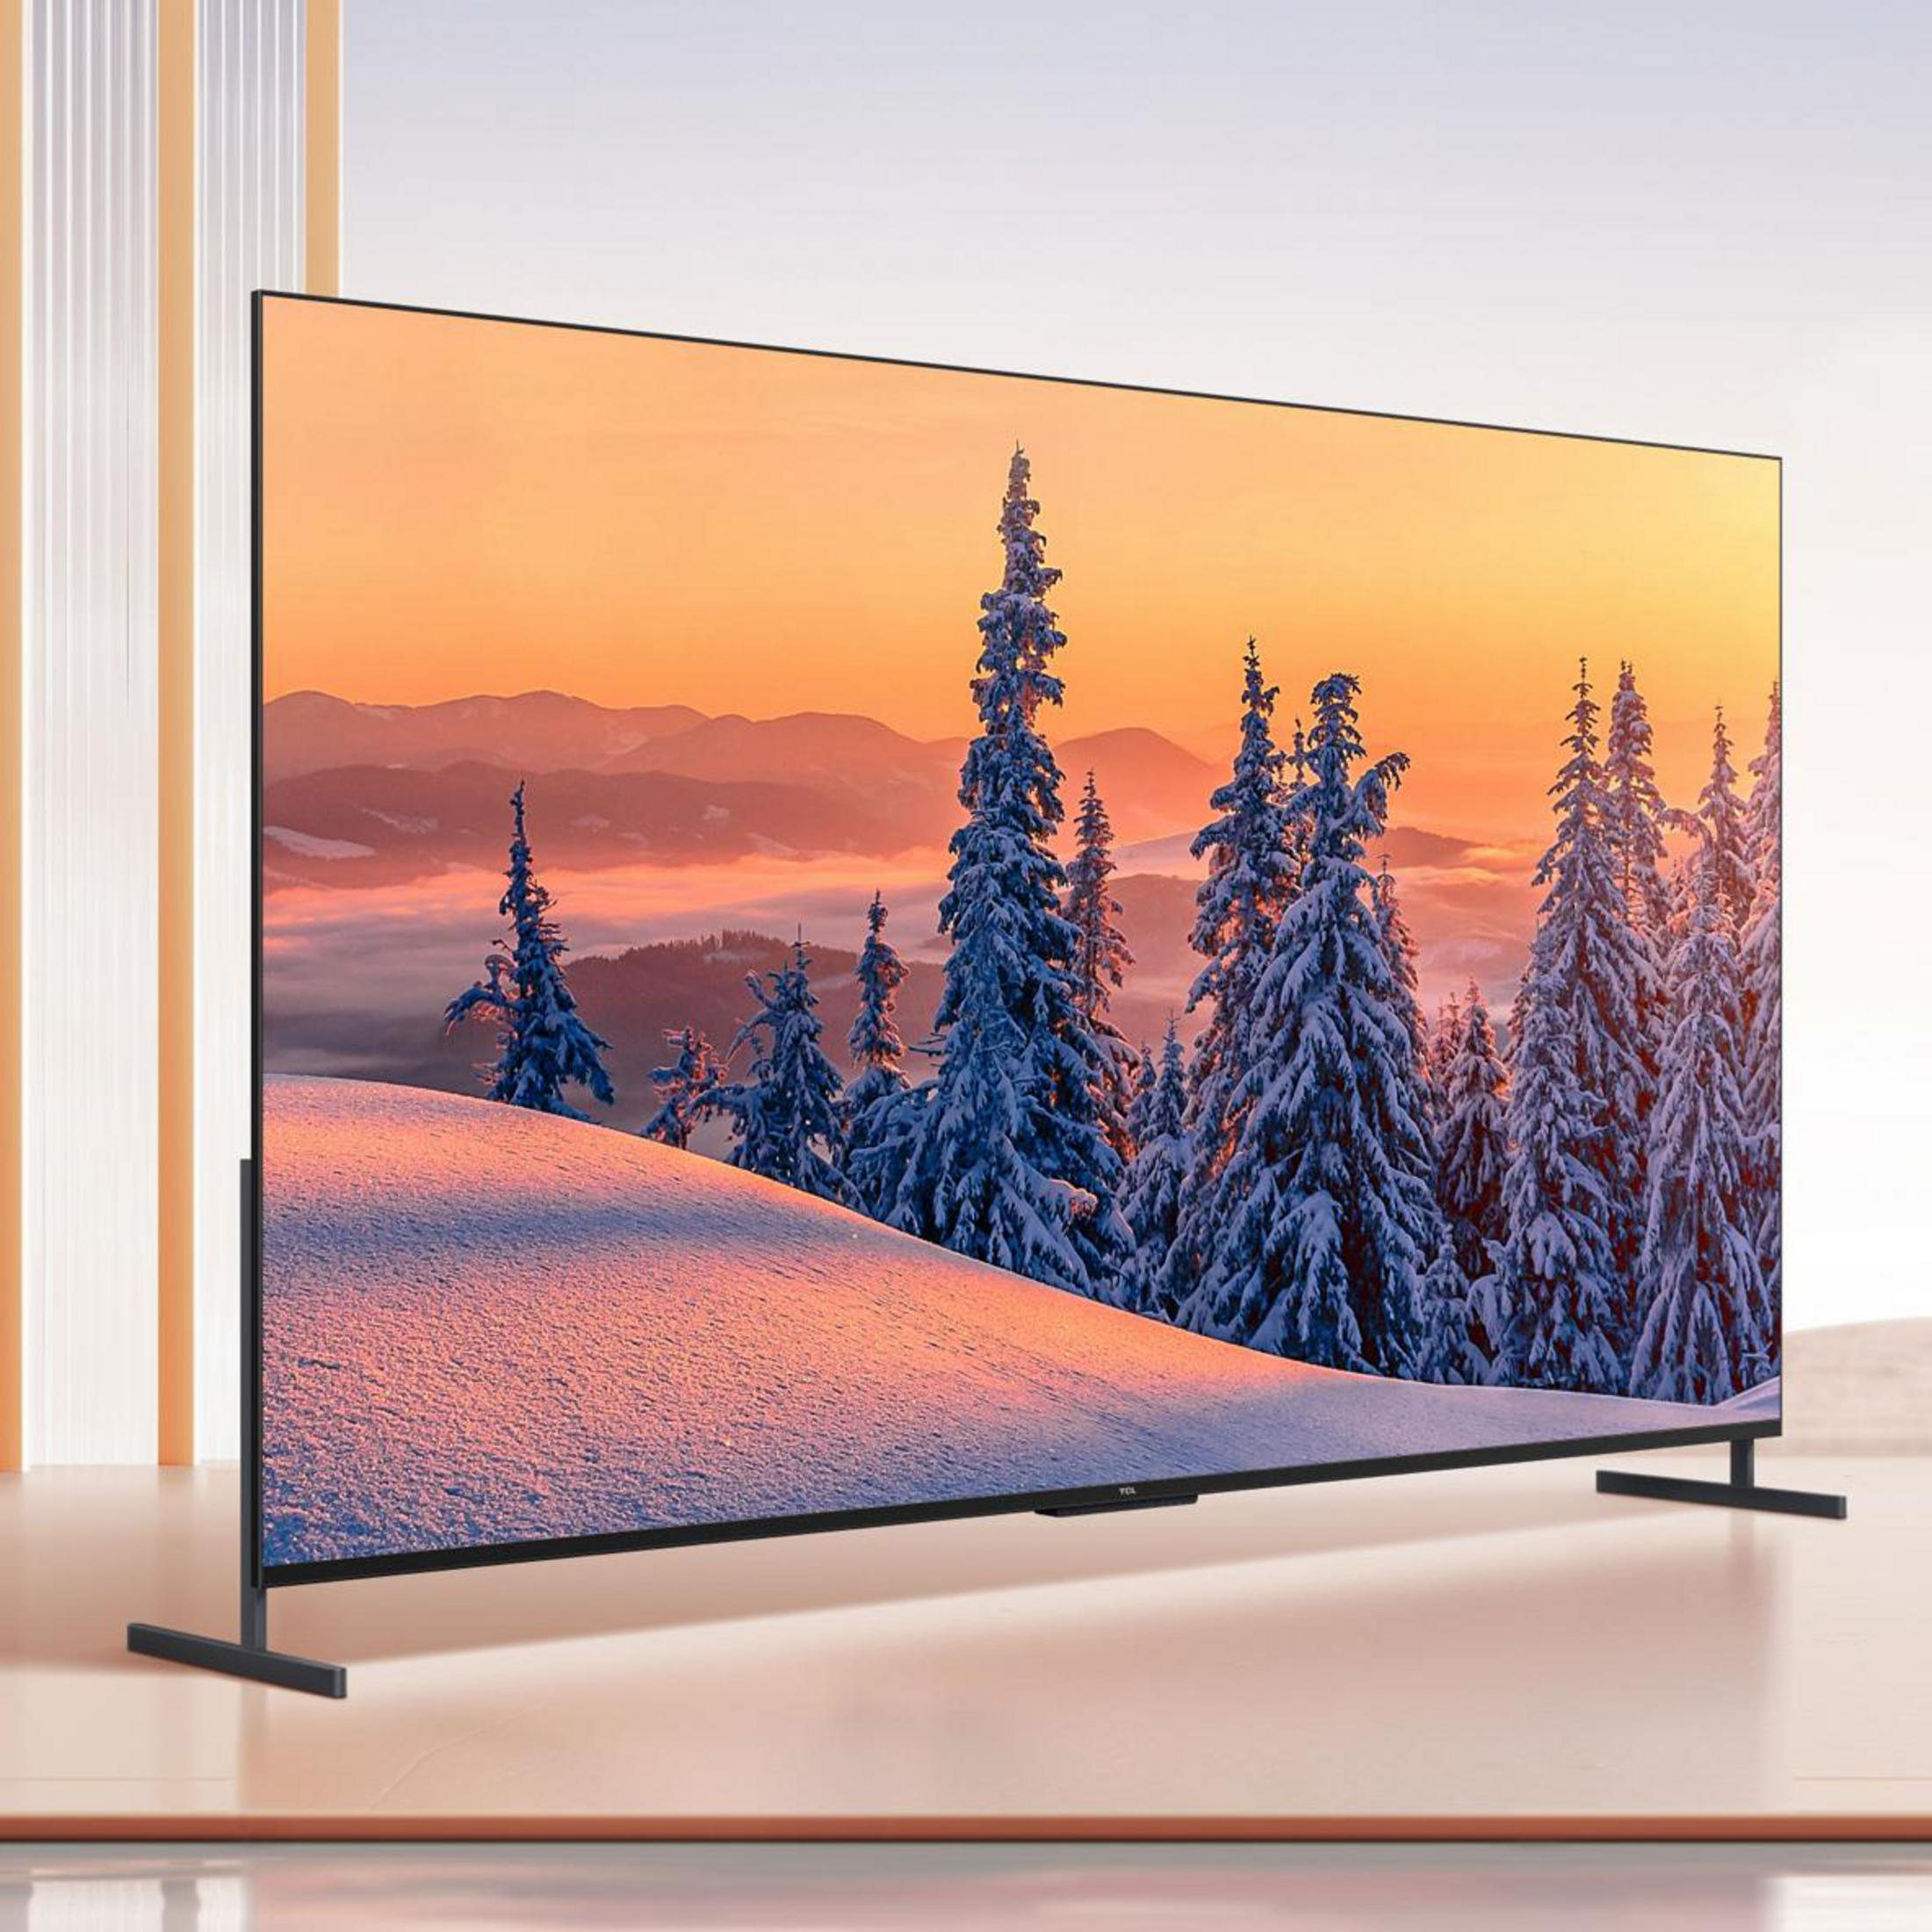 (Flat, 98 cm, / 4K, TV) Zoll 98 QLED 248,92 C TCL Google UHD TV 735